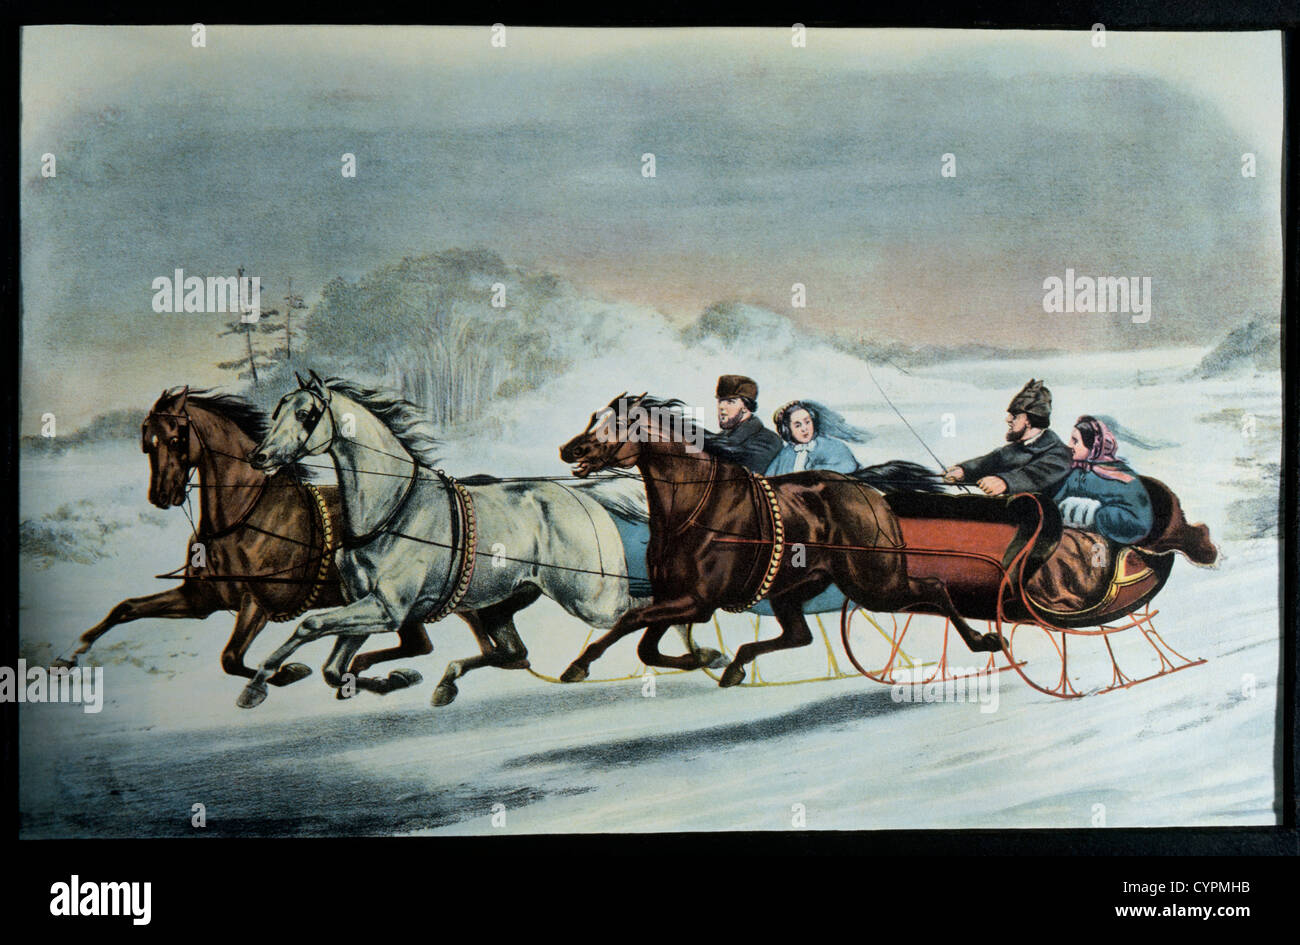 Fahrt mit dem Pferdeschlitten, Currier & Ives, Lithographie, 1859 Stockfoto